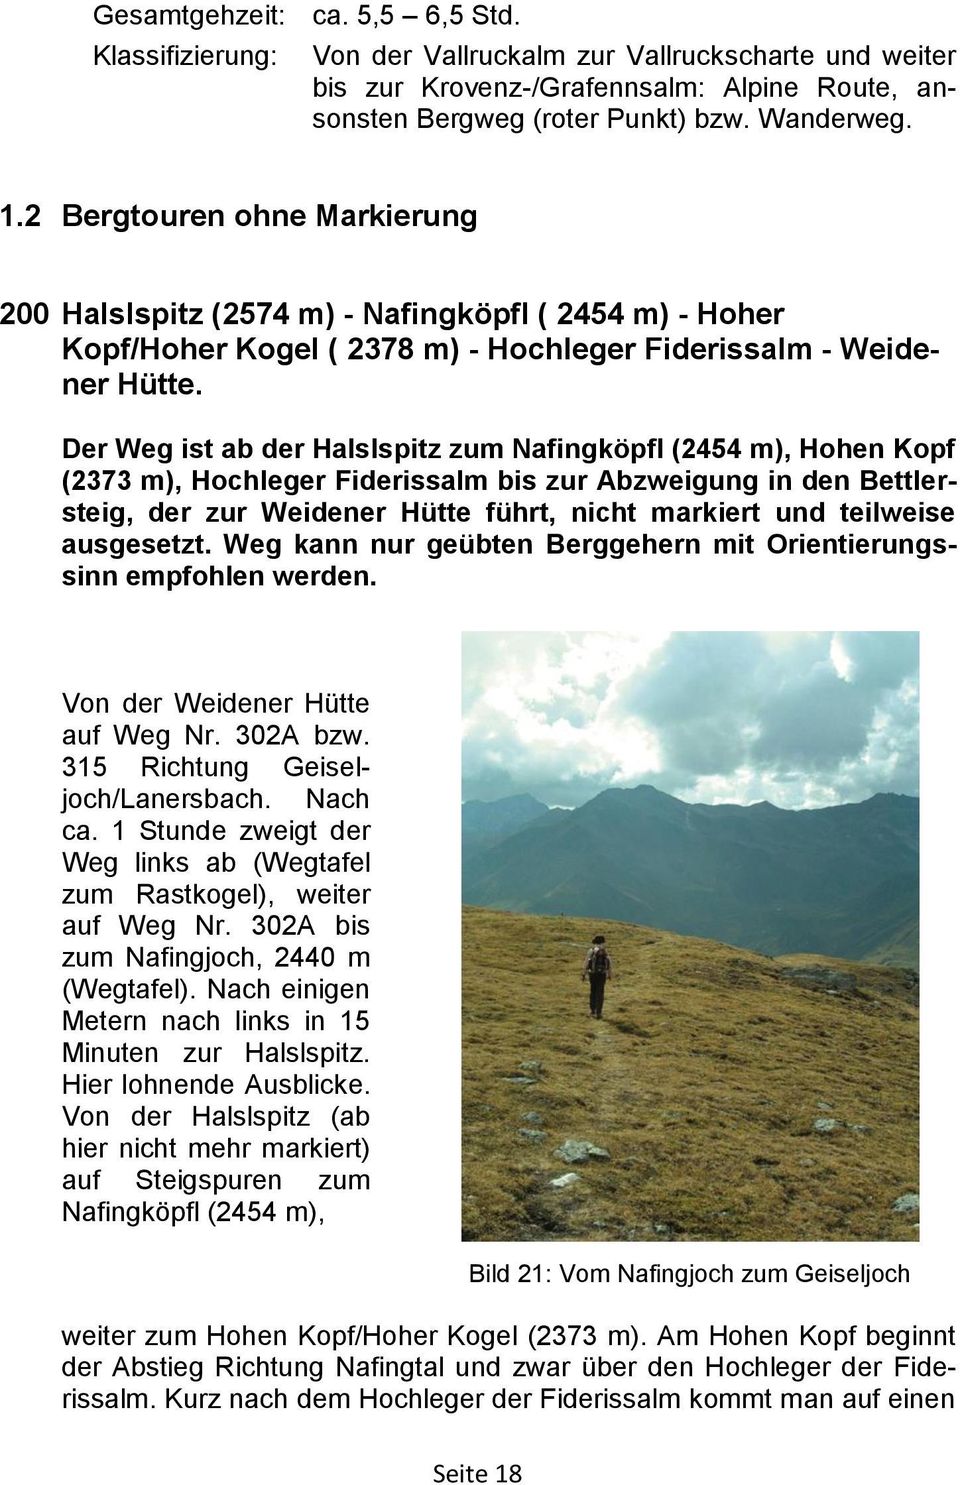 Der Weg ist ab der Halslspitz zum Nafingköpfl (2454 m), Hohen Kopf (2373 m), Hochleger Fiderissalm bis zur Abzweigung in den Bettlersteig, der zur Weidener Hütte führt, nicht markiert und teilweise